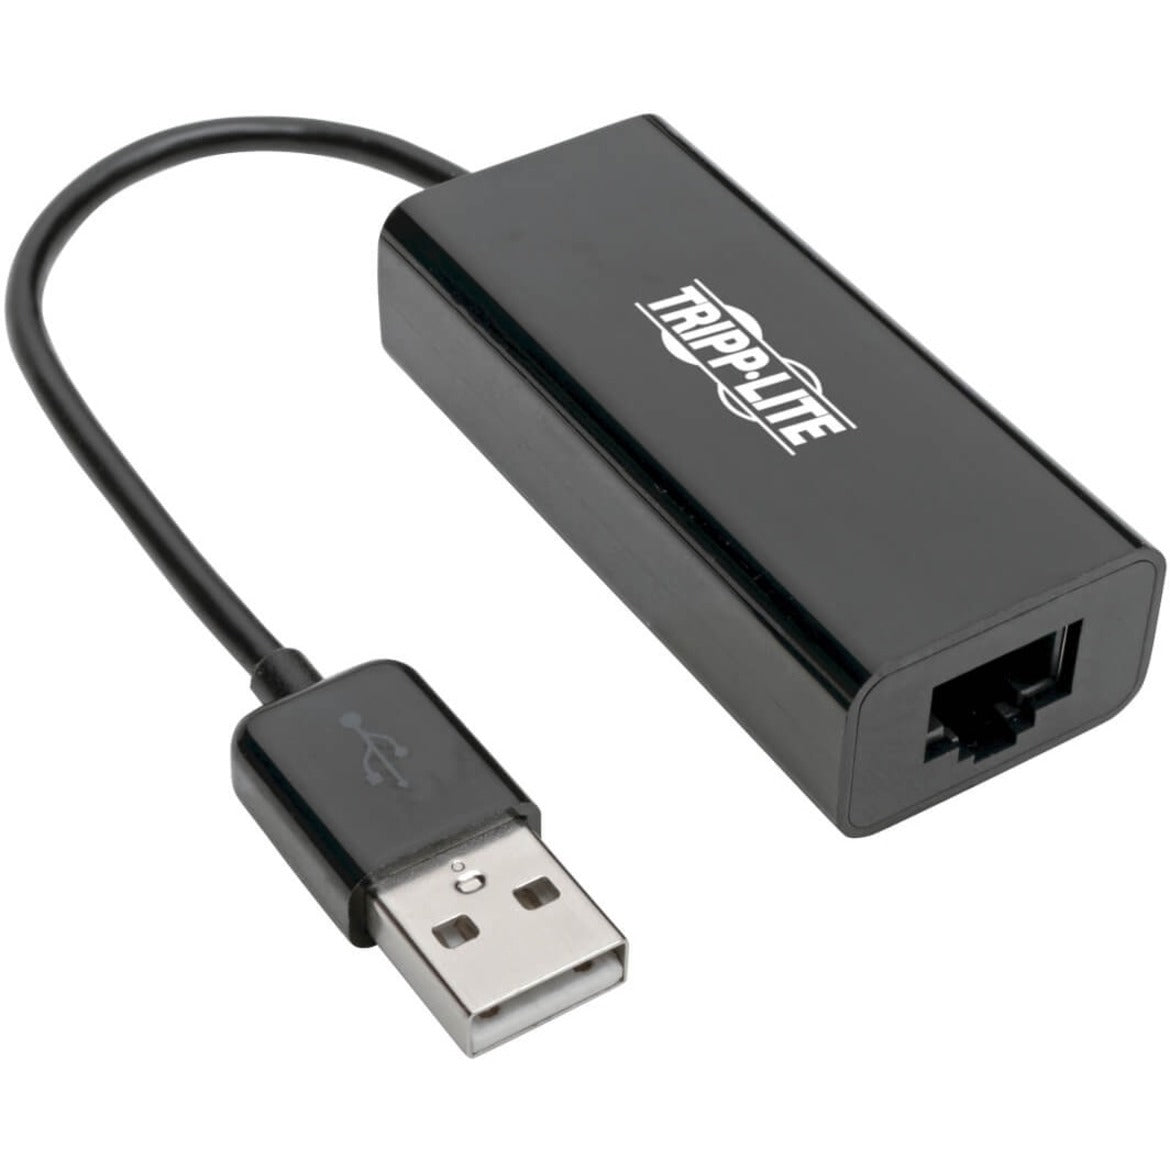 Tripp Lite U236-000-R USB 2.0 auf Ethernet Adapter 10/100 Mbps Einfache Netzwerkverbindung